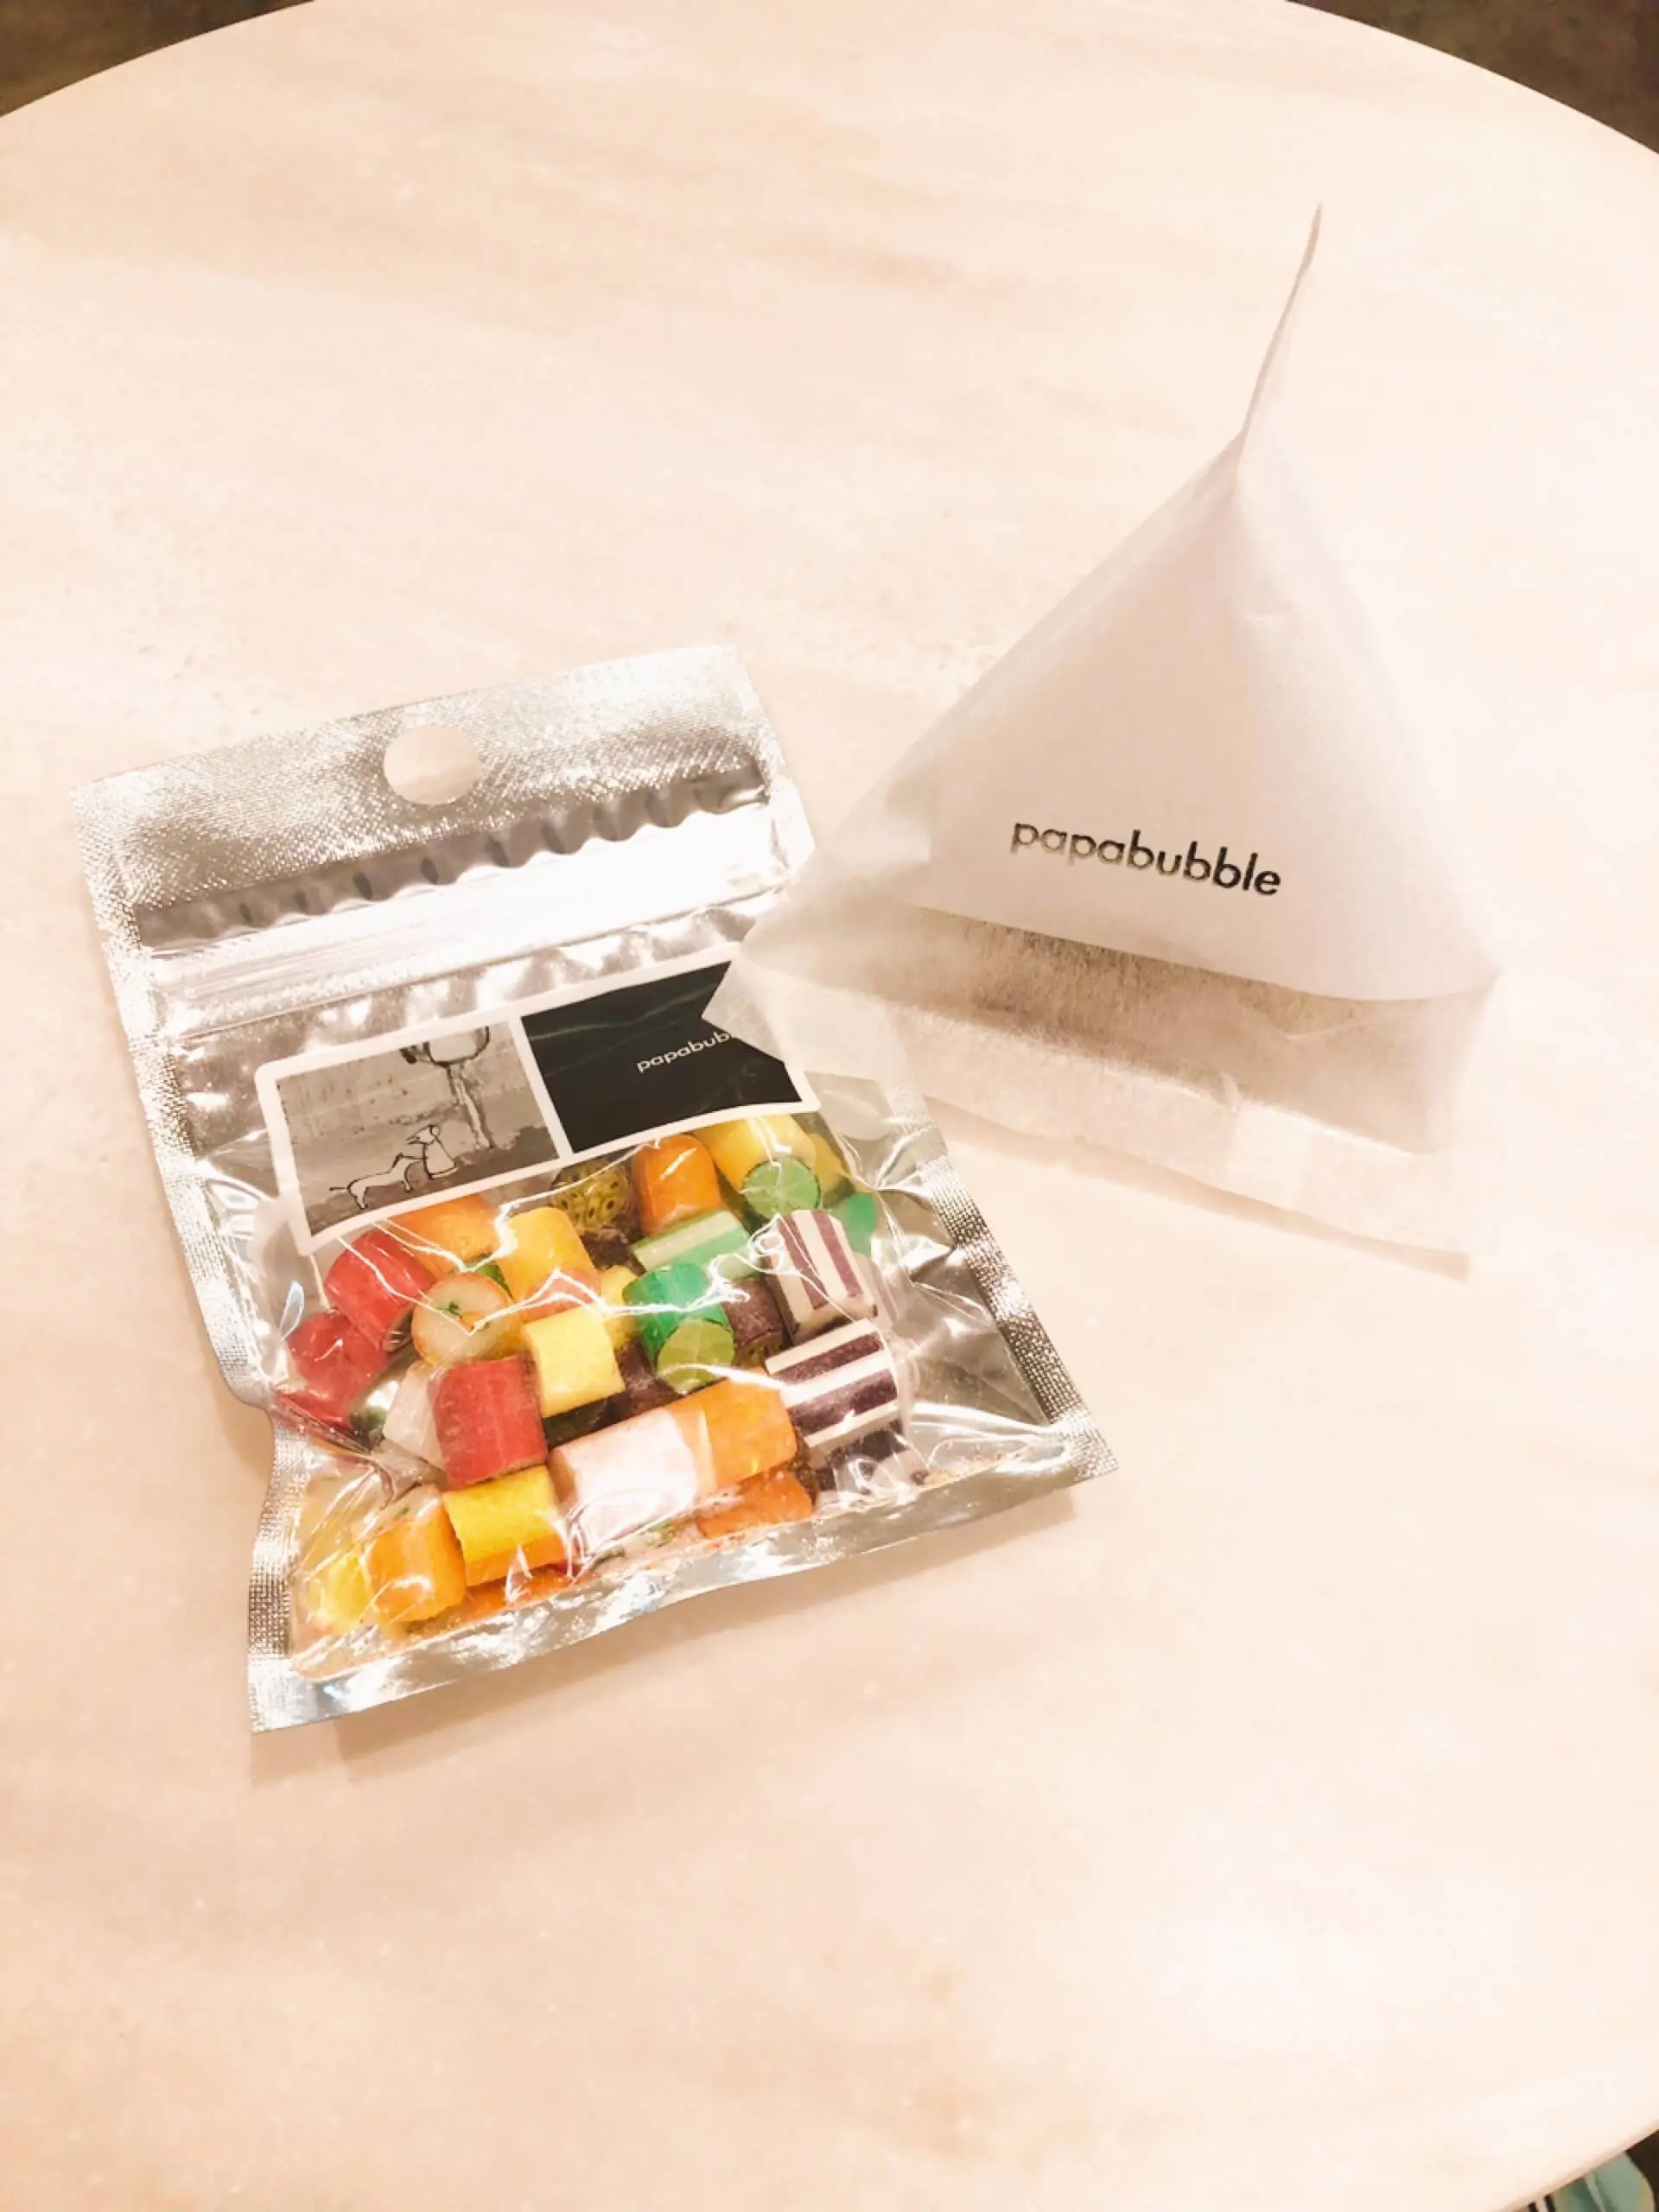 「PAPABUBBLE」のフルーツミックスキャンディーとソフト塩キャラメル。